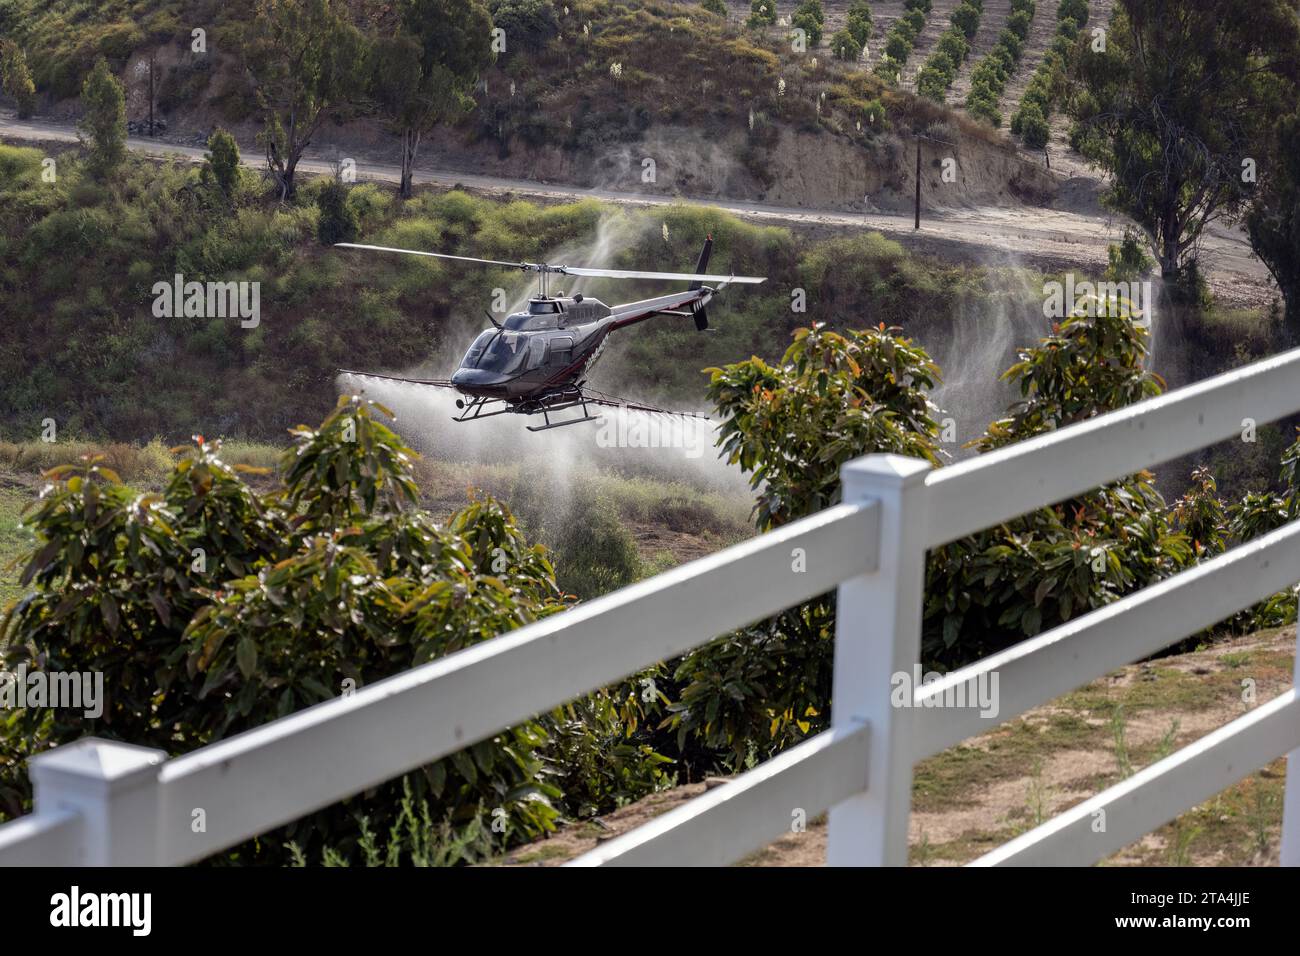 Der landwirtschaftliche Hubschrauber fliegt tief über den Avocadobäumen, um die Schädlingsbekämpfung und die Verteilung des Pestizids präzise zu steuern. Stockfoto